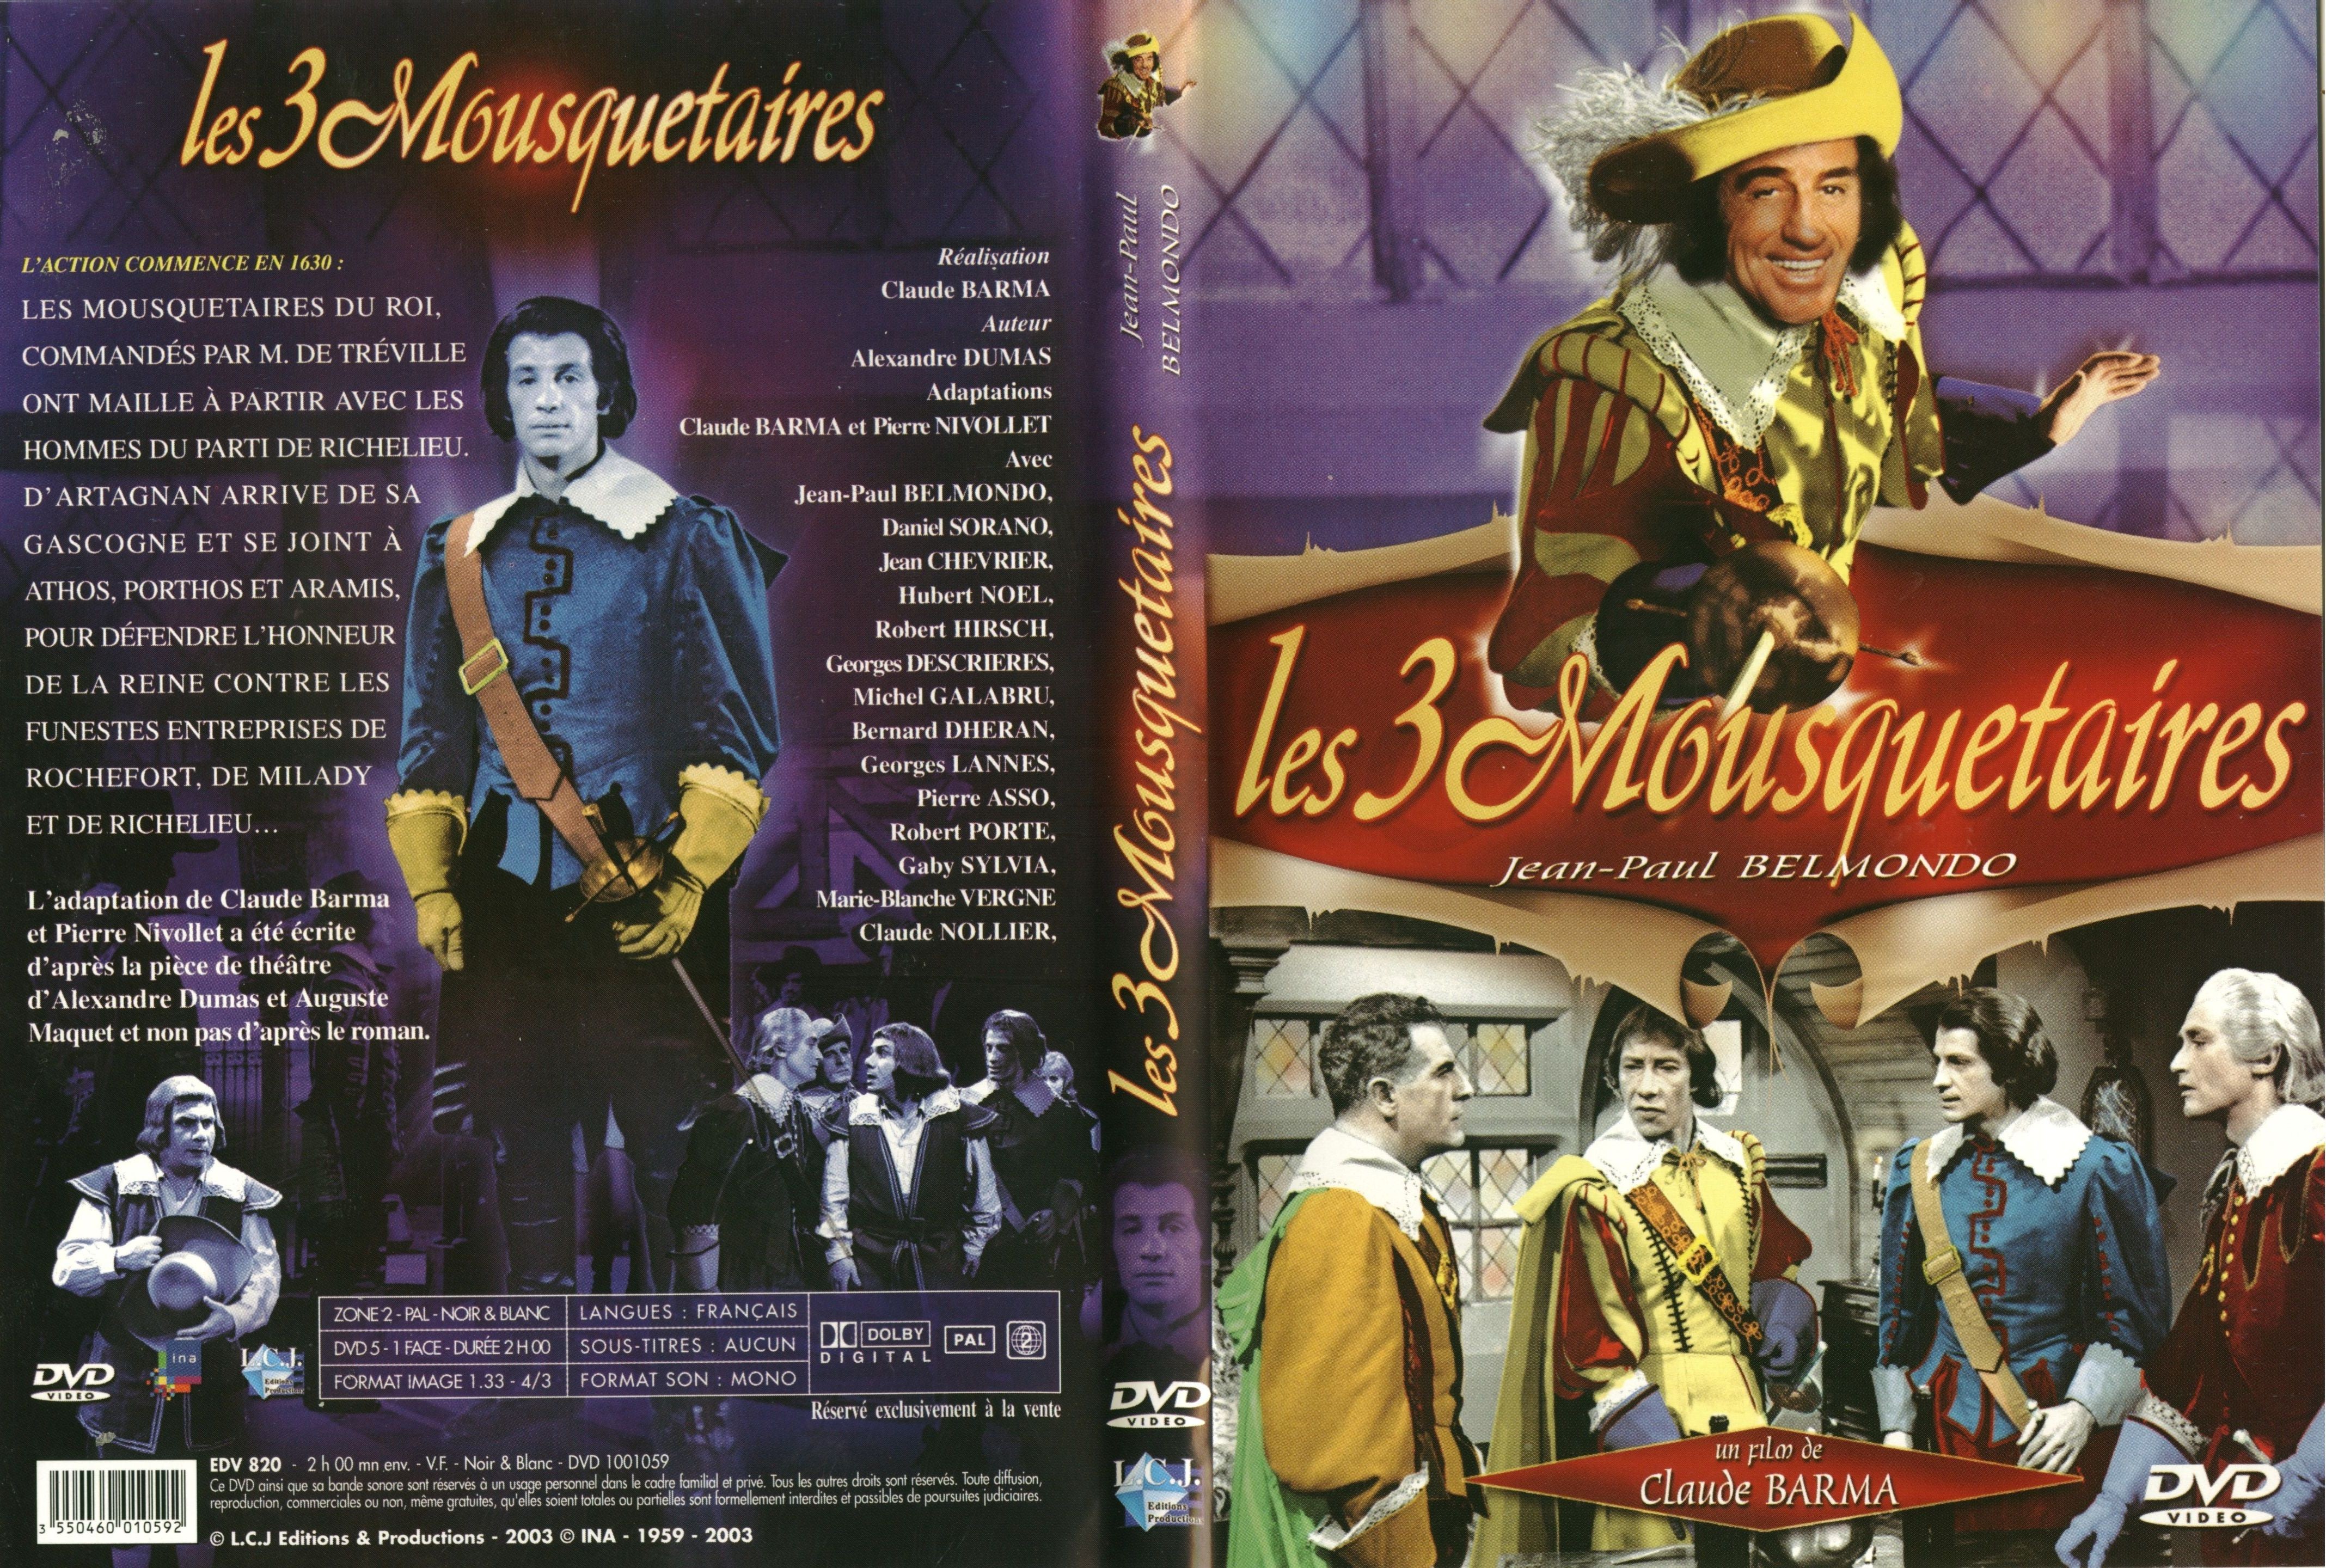 Jaquette DVD Les trois mousquetaires (Belmondo)